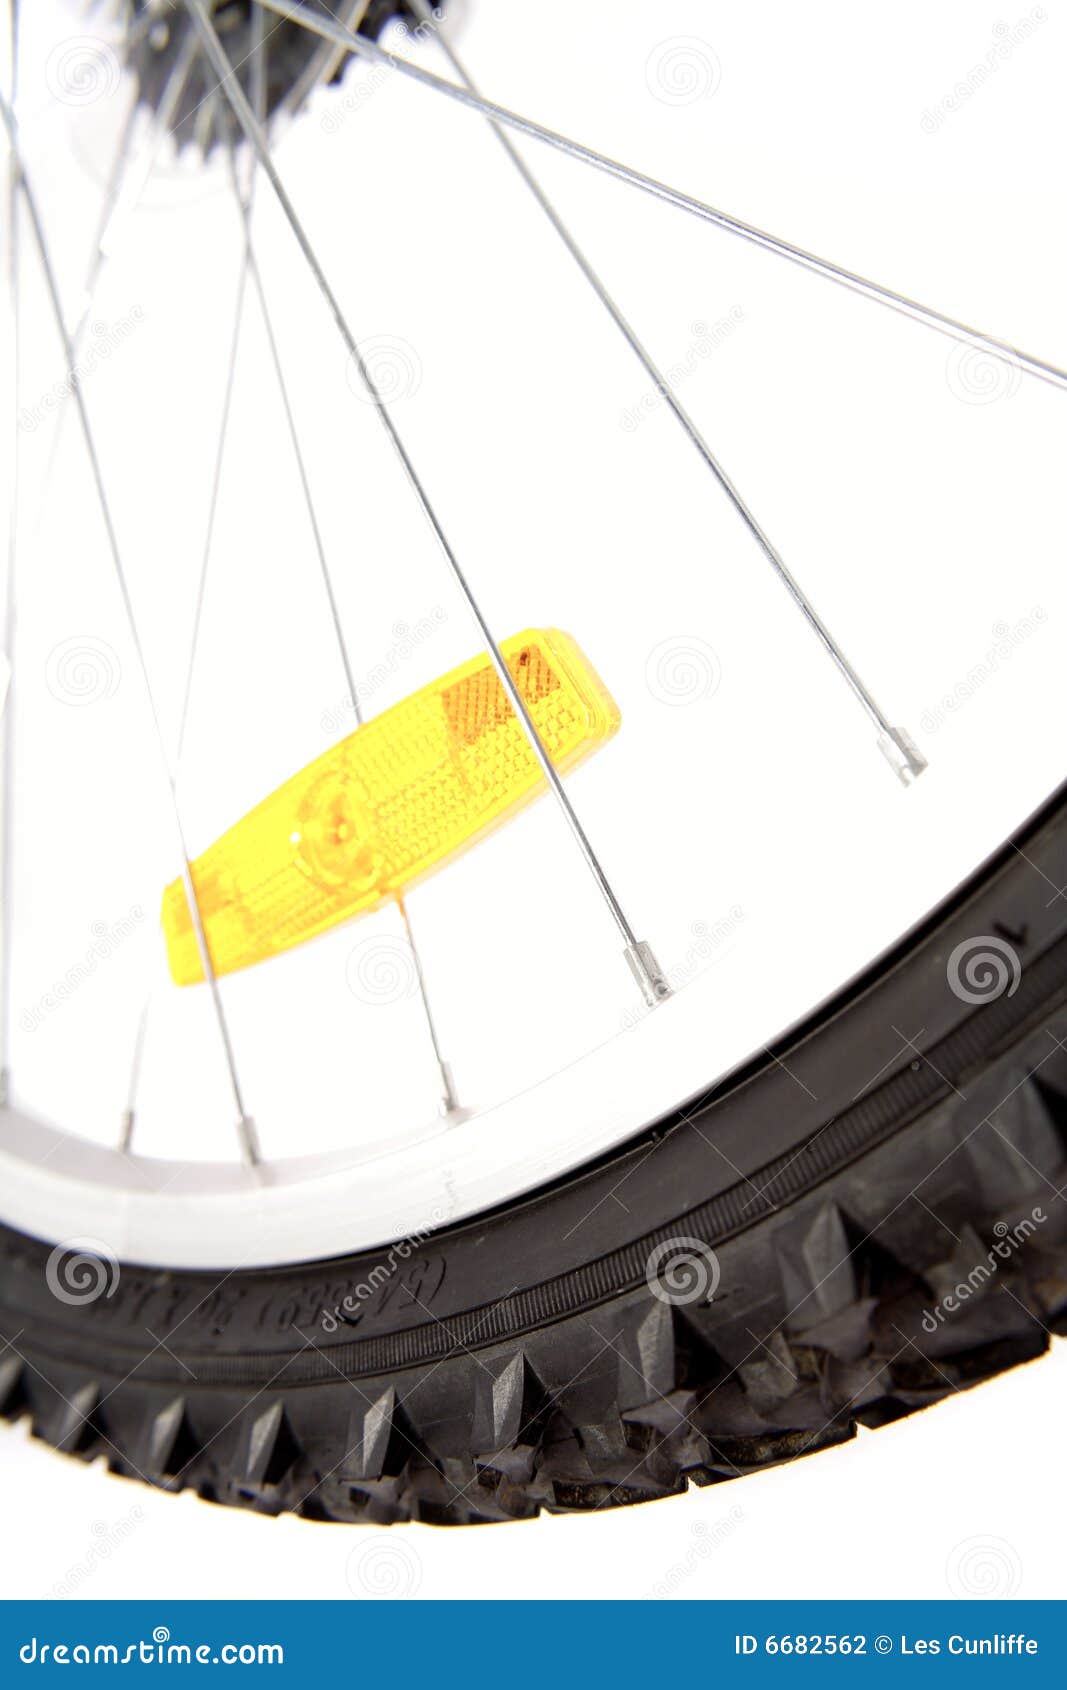 yellow reflector on bike wheel